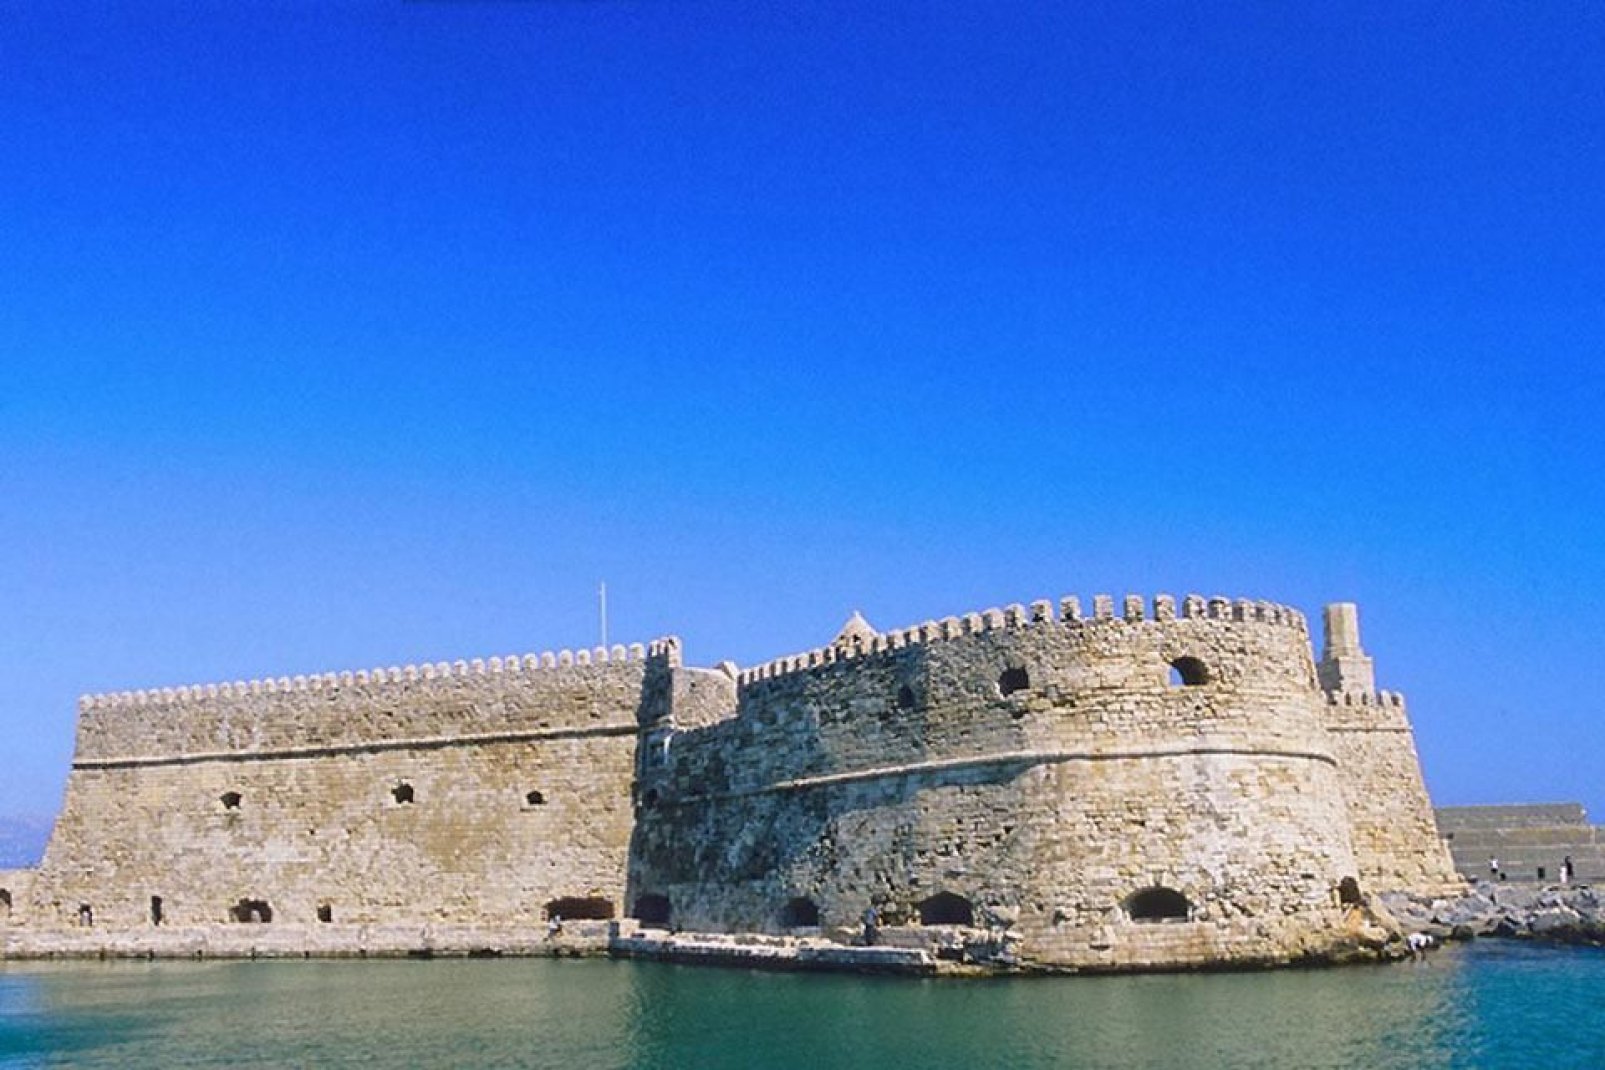 Die venezianische Festung erinnert an die Invasion Venedigs im 13. Jahrhundert und die bewegte Stadtgeschichte.